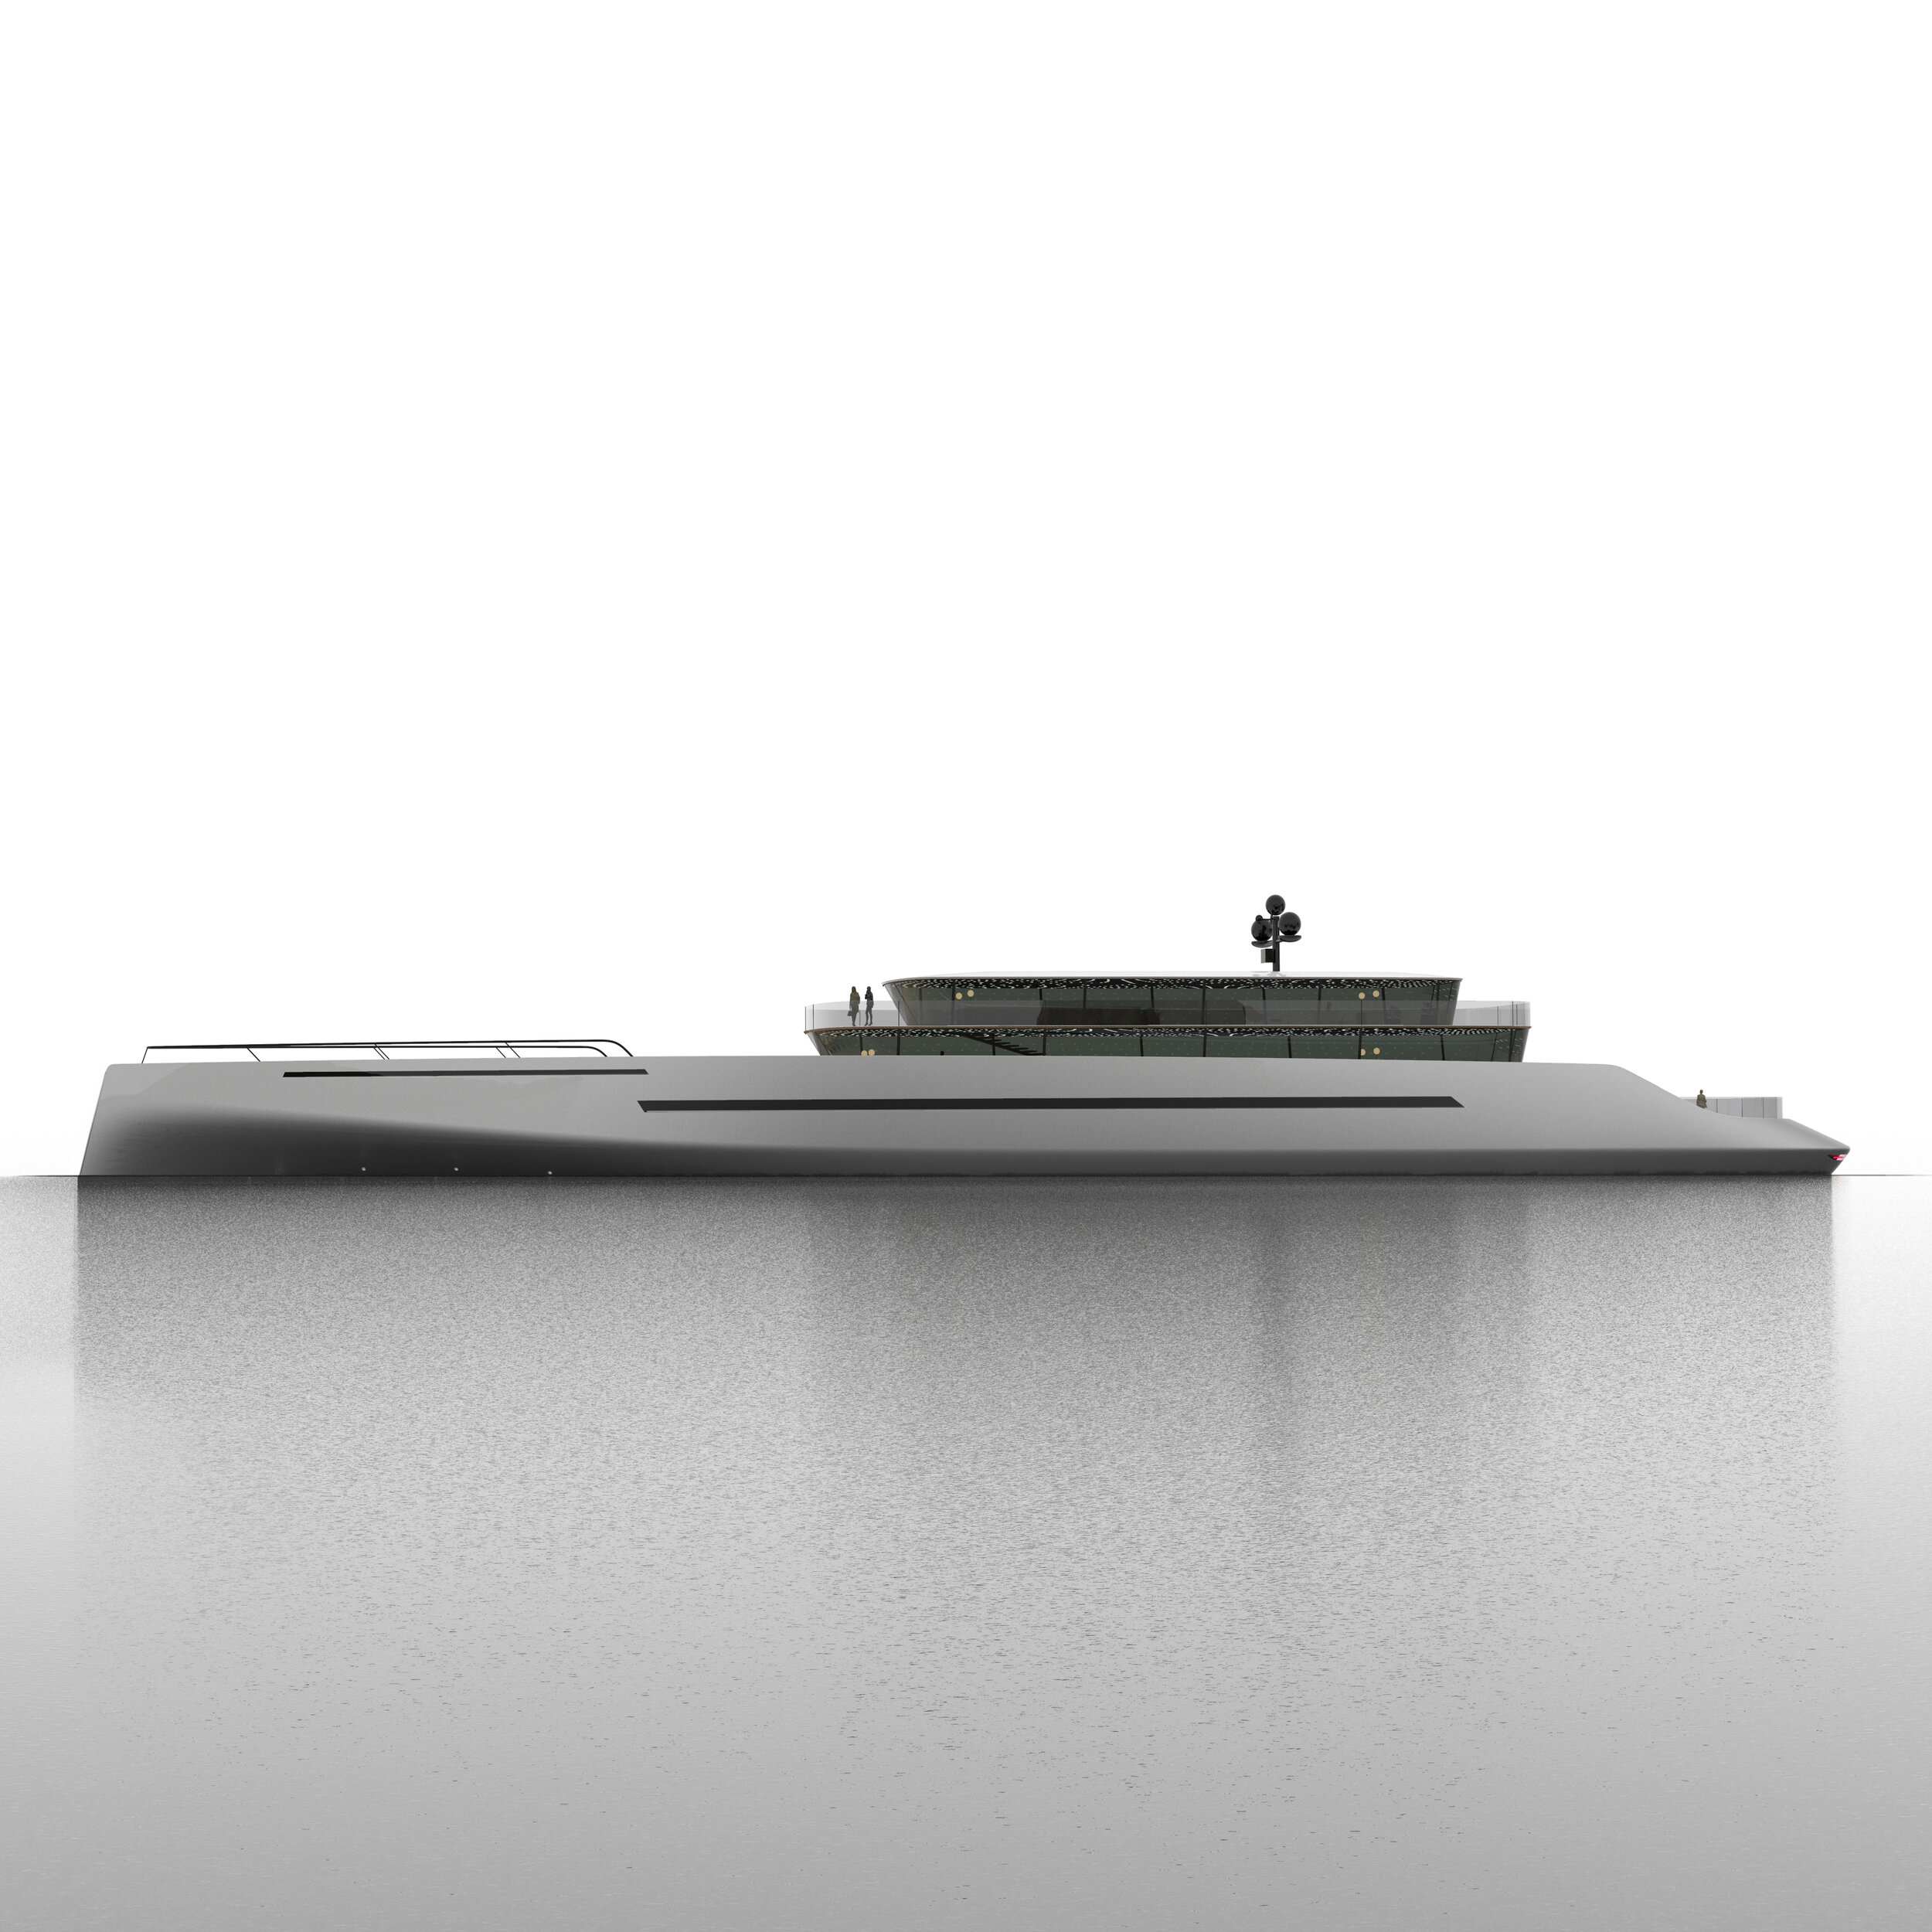 Pagoda - Yacht Concept